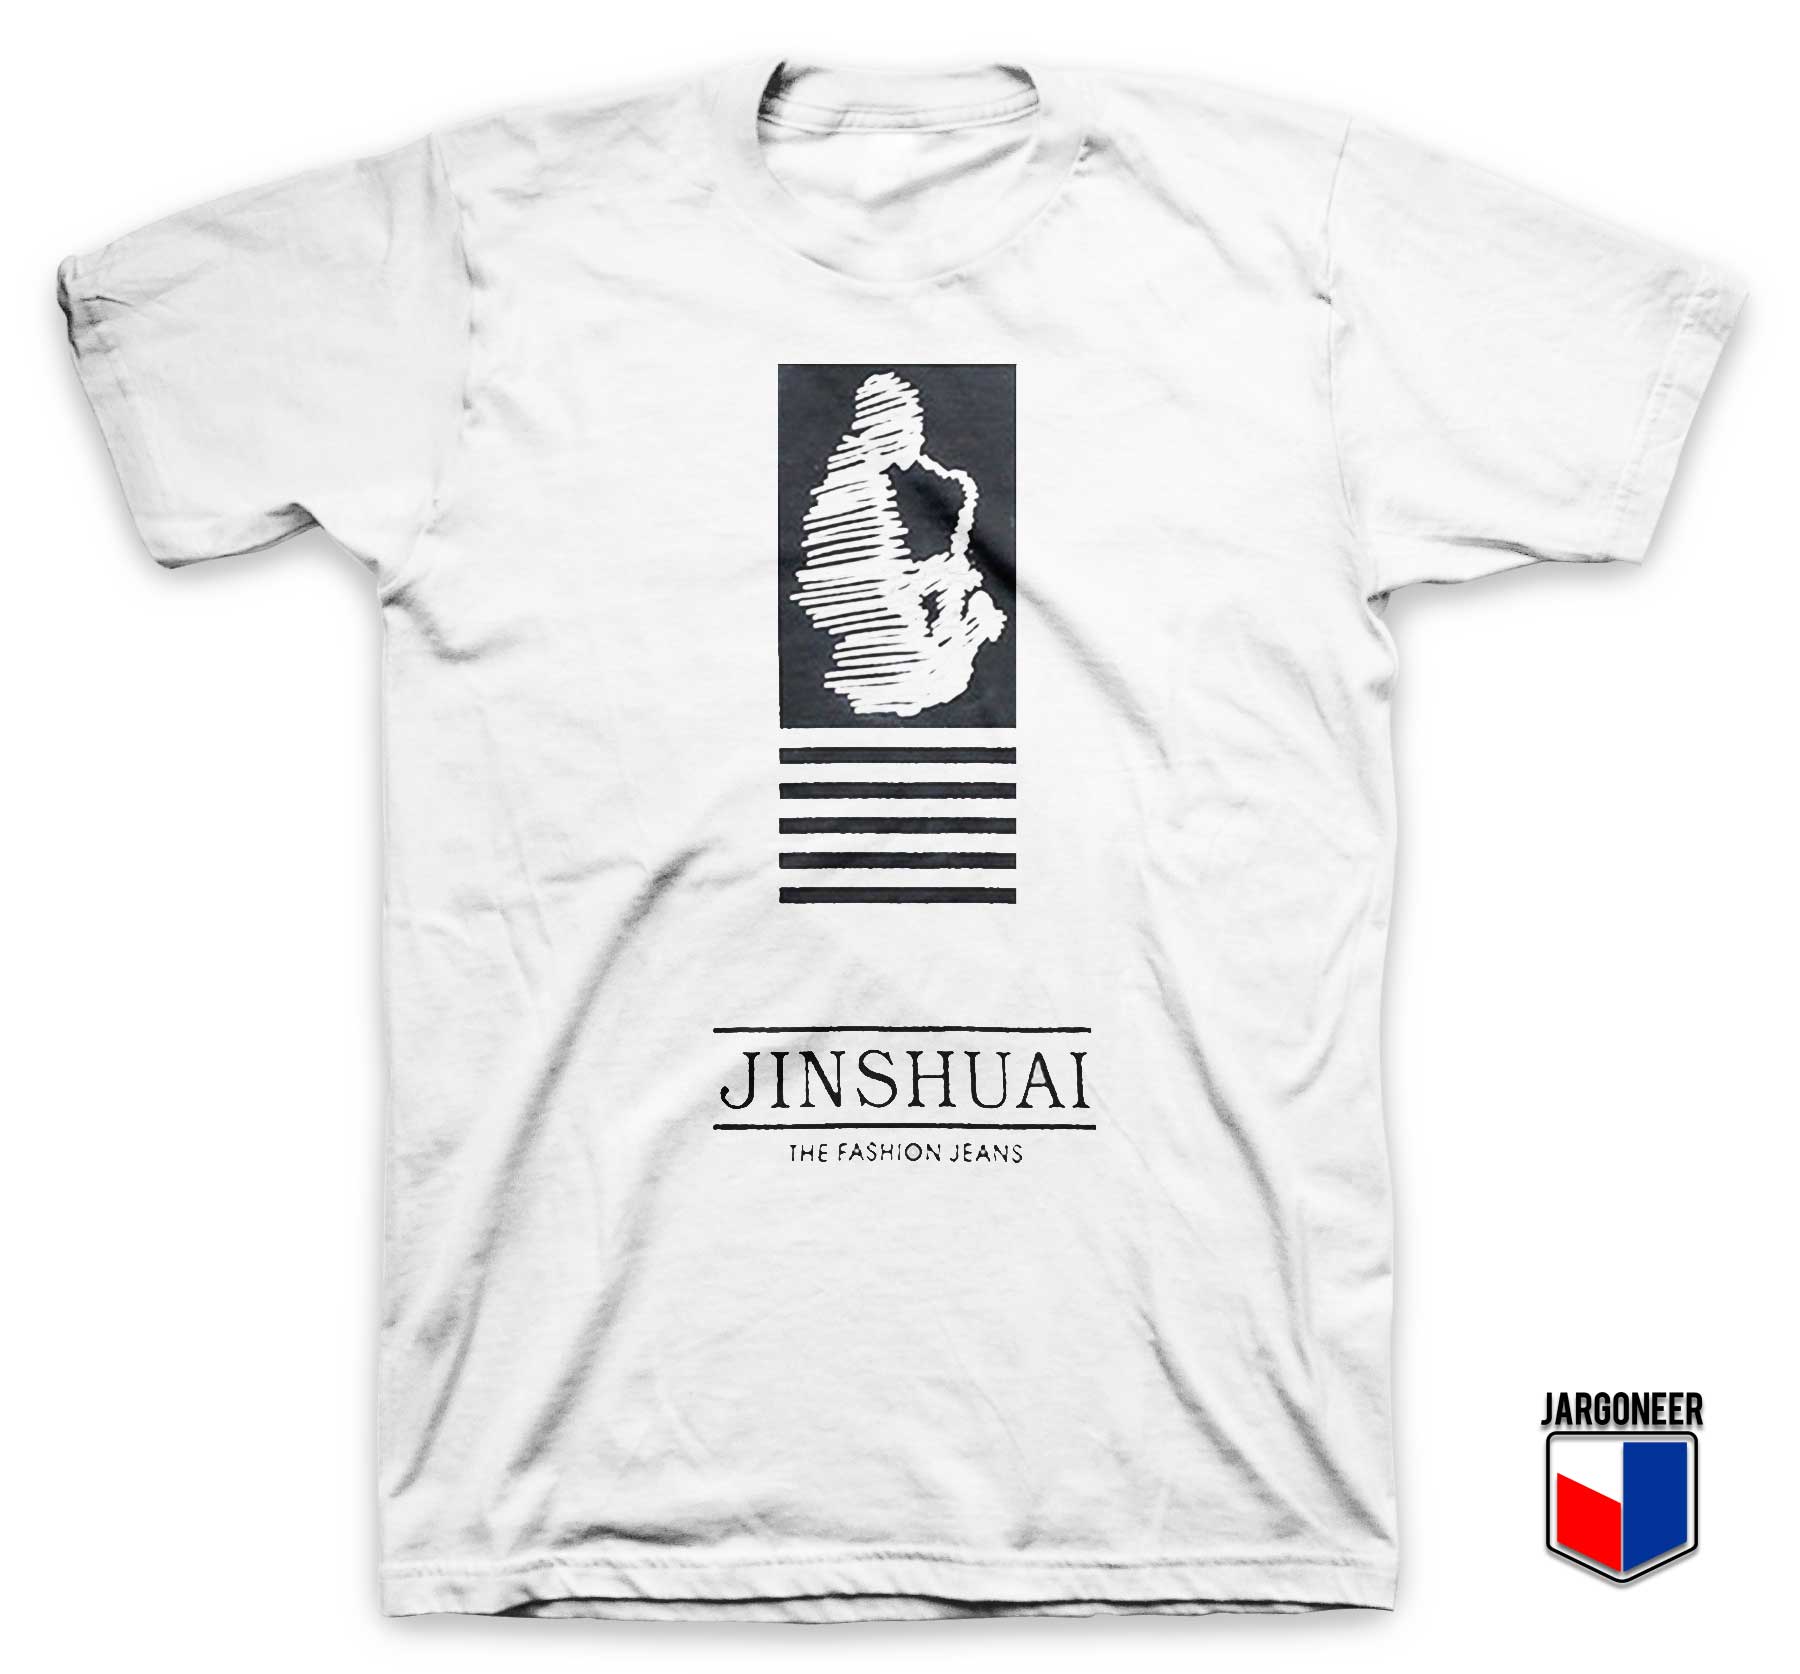 Jinshuai The Fashion Jeans T Shirt - Shop Unique Graphic Cool Shirt Designs